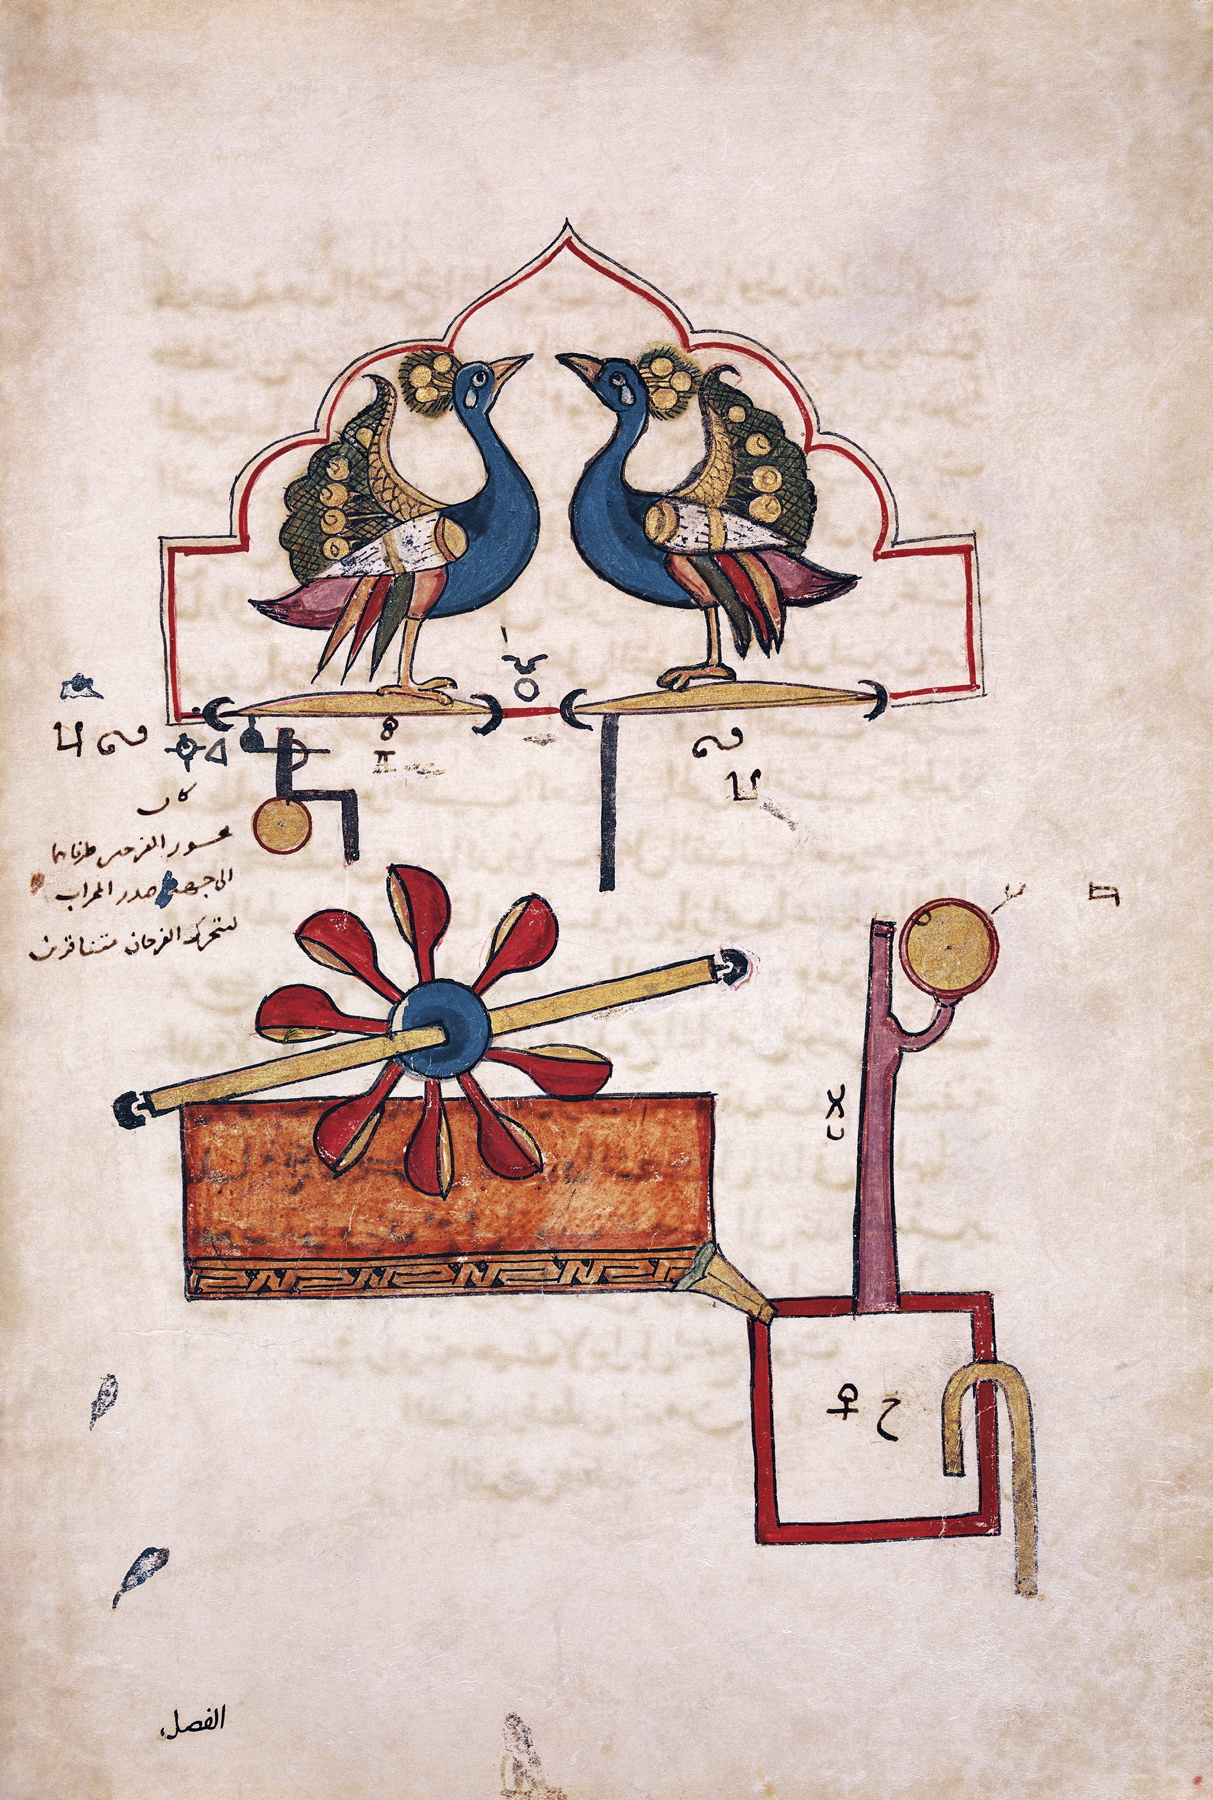 Zegar wodny Paw. Ilustracja z 1315 r. z „Księgi wiedzy o pomysłowych urządzeniach mechanicznych” islamskiego uczonego Ismaila al-Dżazariego